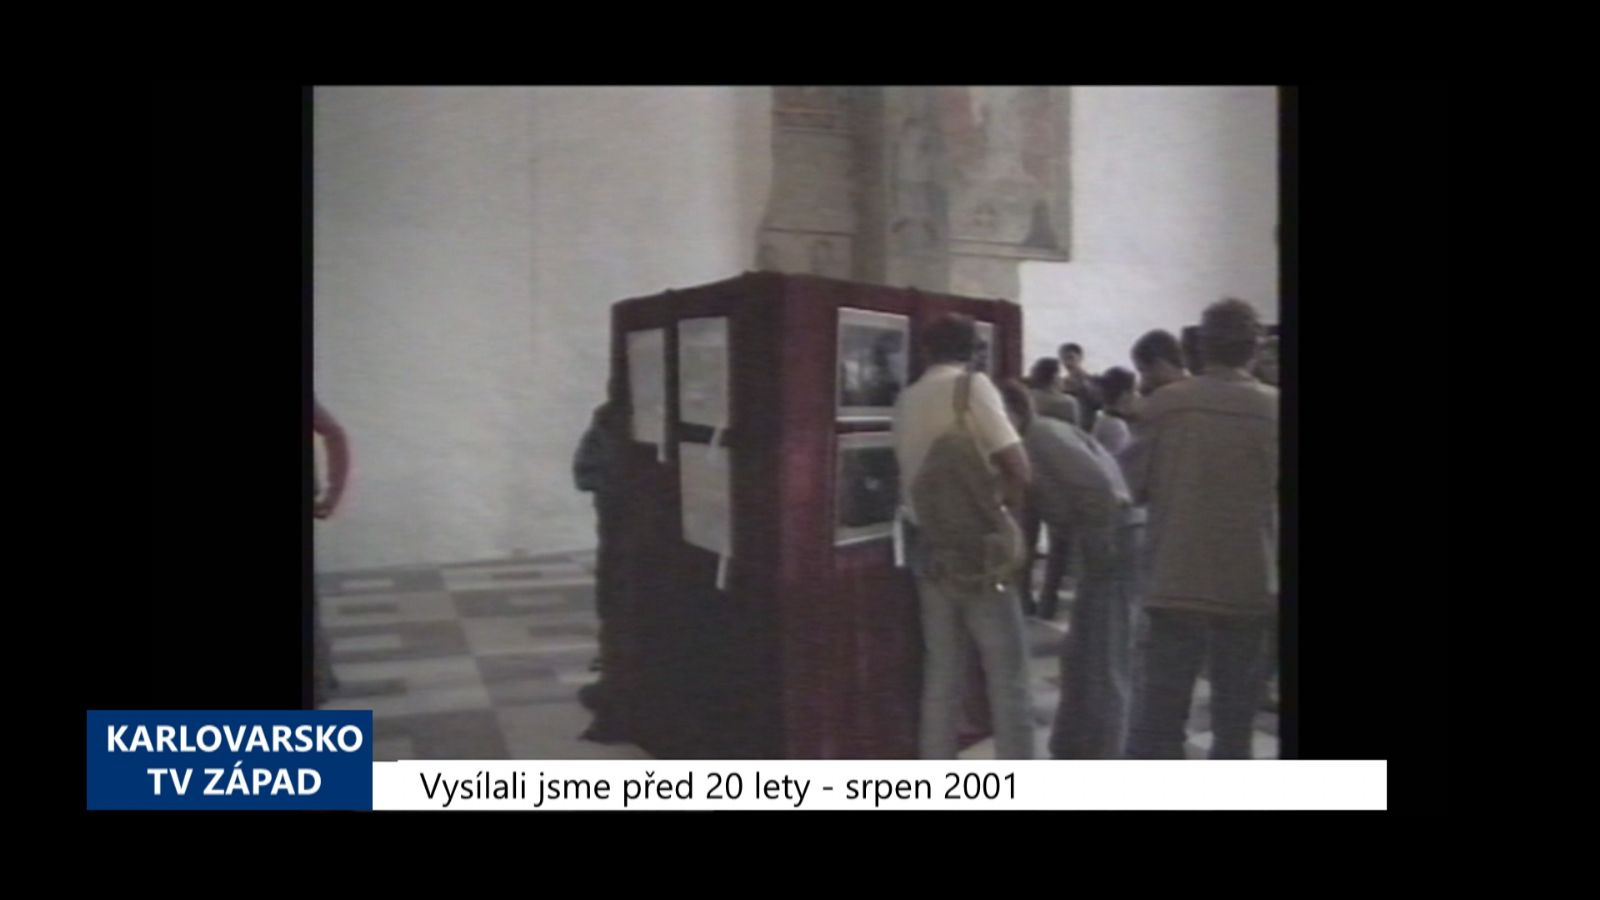 2001 – Cheb: Výstava upozorňuje na problémy města (TV Západ)